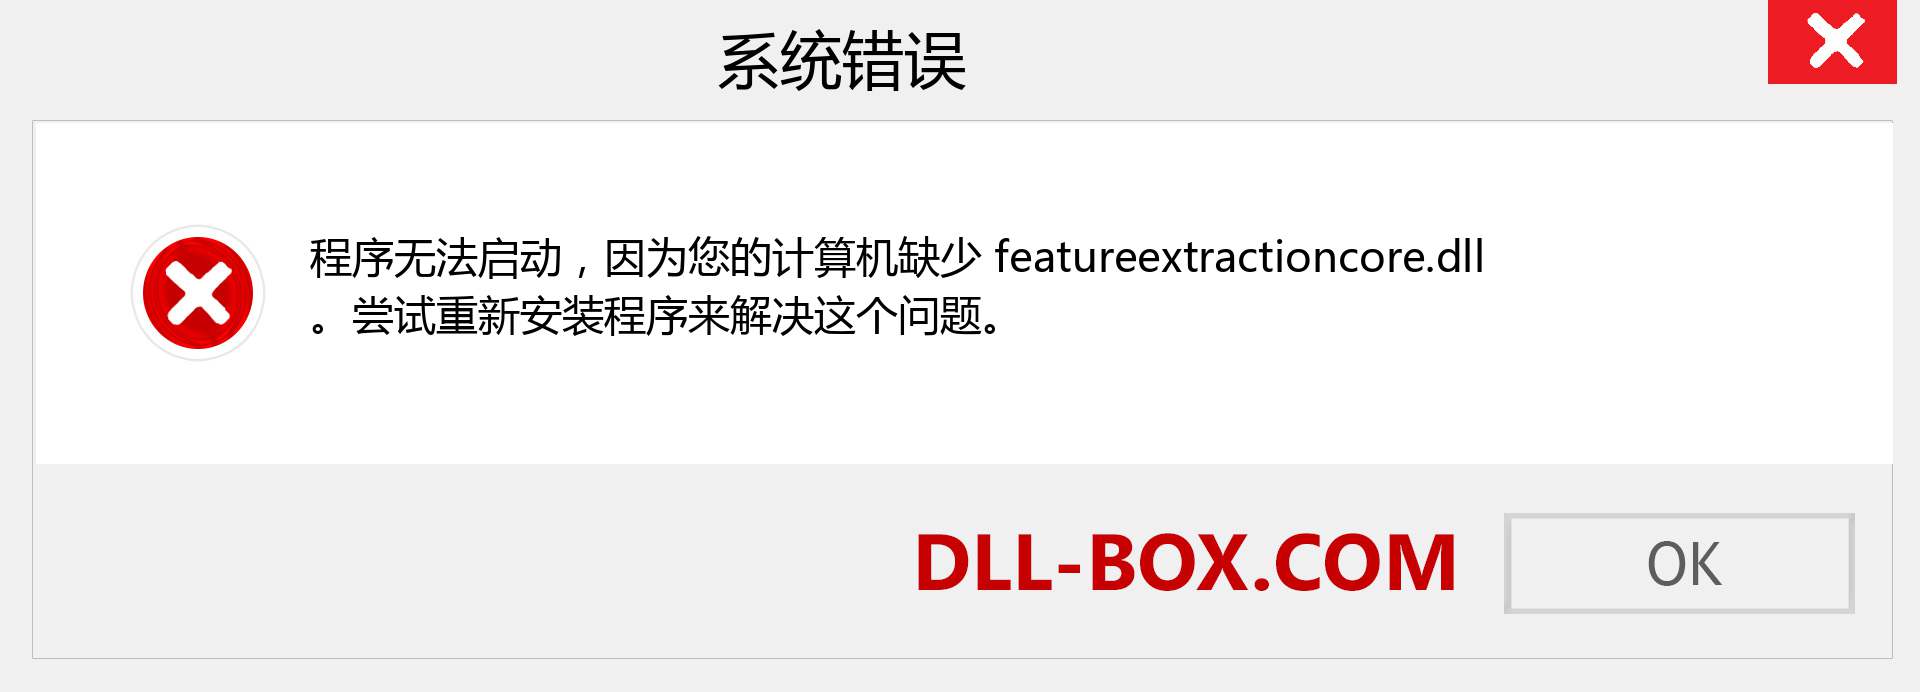 featureextractioncore.dll 文件丢失？。 适用于 Windows 7、8、10 的下载 - 修复 Windows、照片、图像上的 featureextractioncore dll 丢失错误